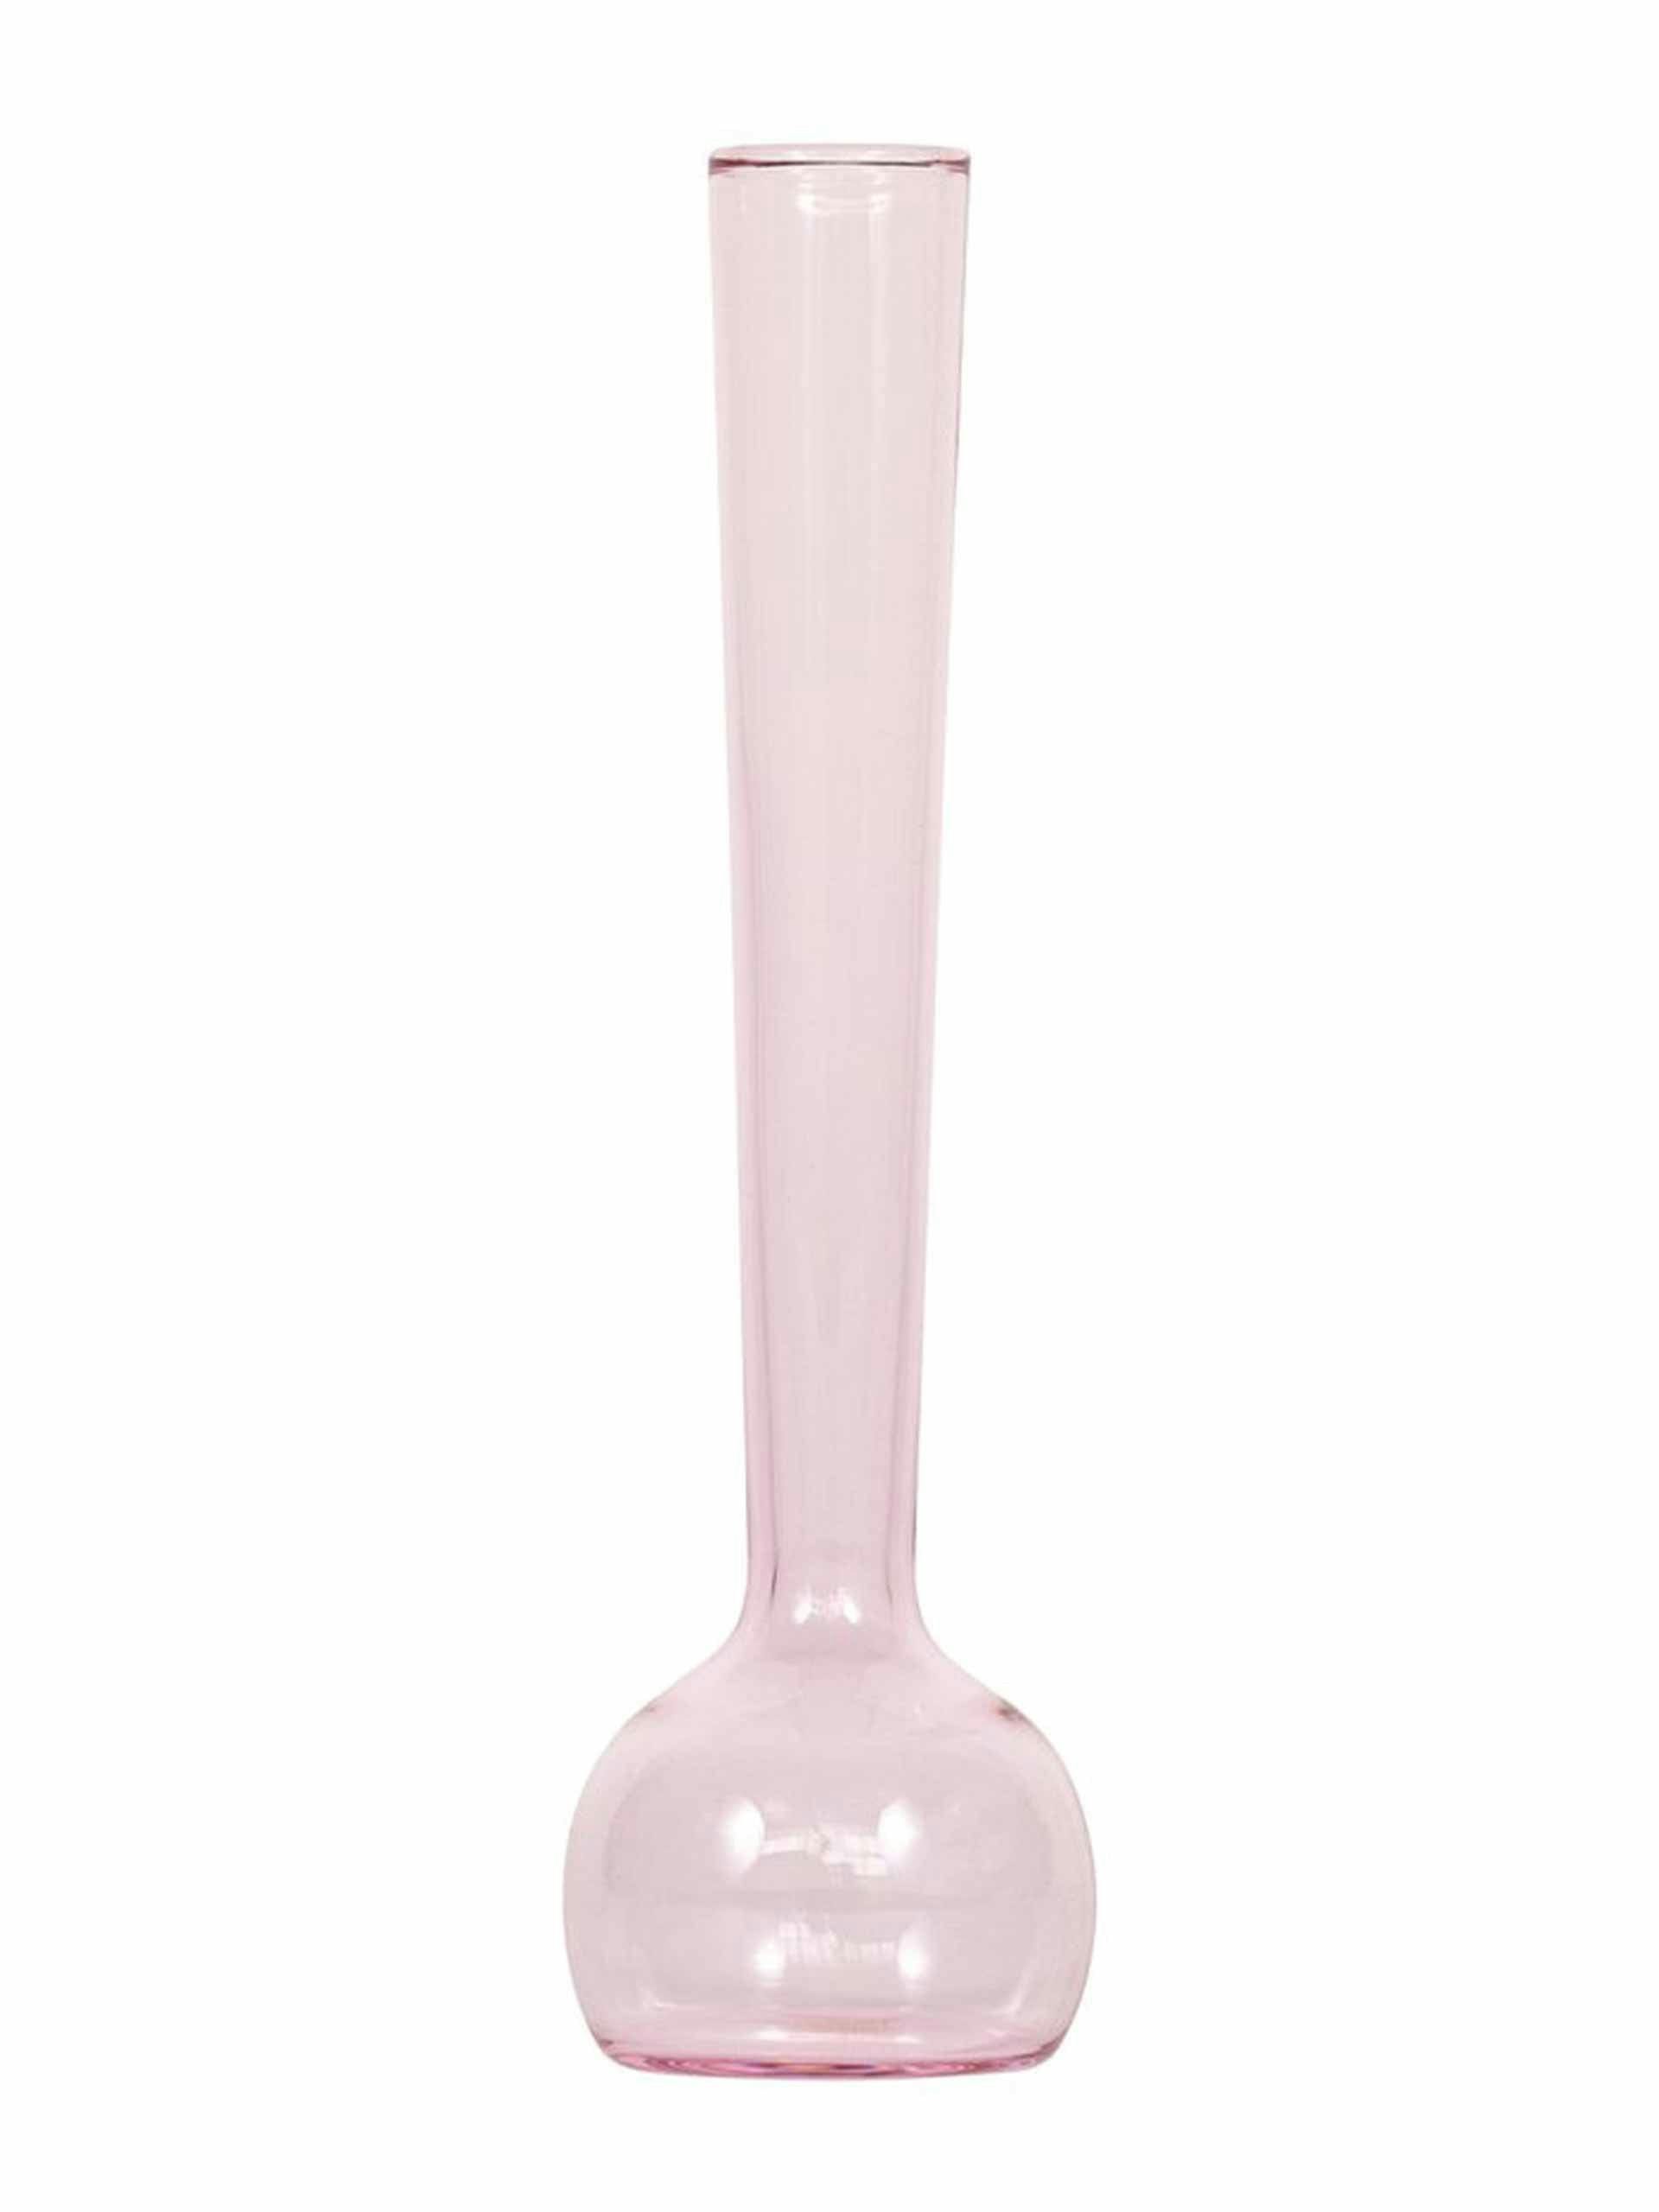 Hand blown pink glass vase